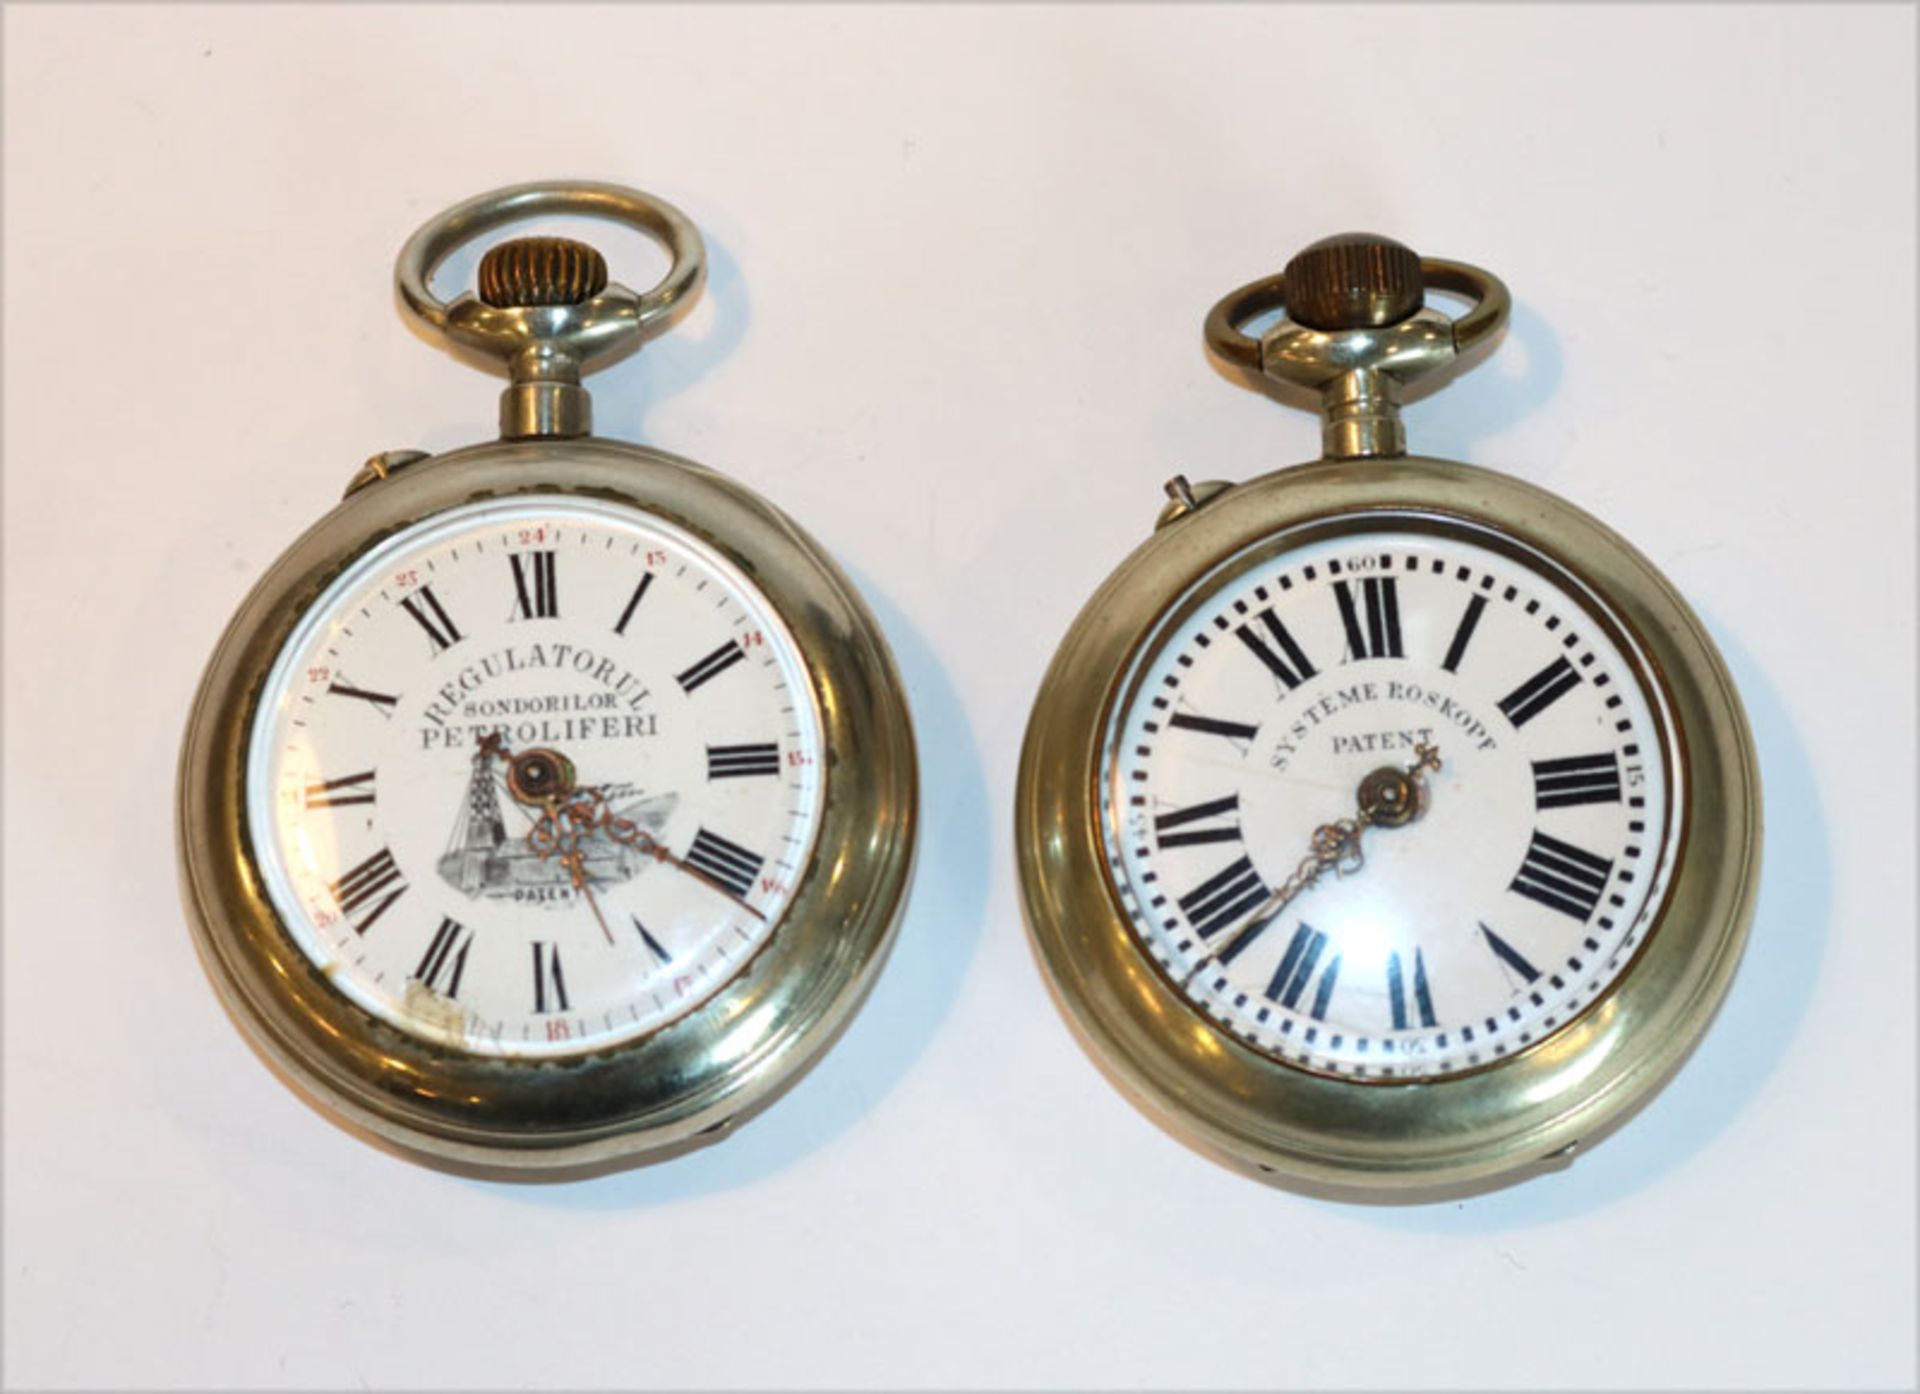 2 Nickel Taschenuhren um 1910, 'Systeme Roskopf Patent' und 'Regulatorul Sondorilor Petroliferi',